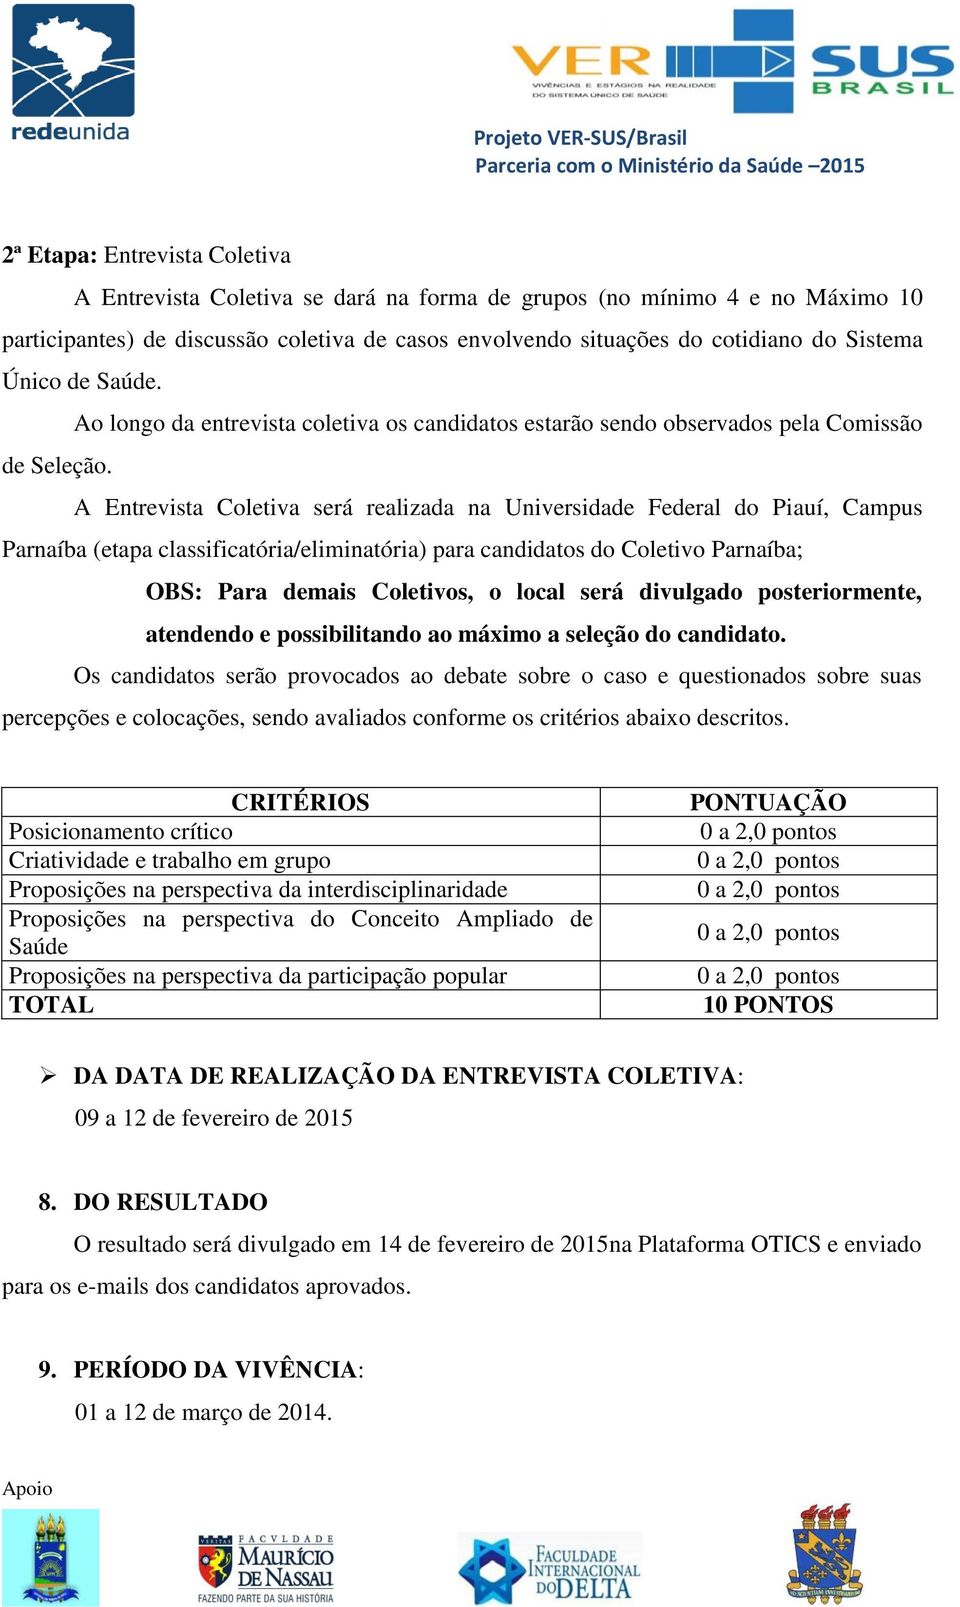 A Entrevista Coletiva será realizada na Universidade Federal do Piauí, Campus Parnaíba (etapa classificatória/eliminatória) para candidatos do Coletivo Parnaíba; OBS: Para demais Coletivos, o local